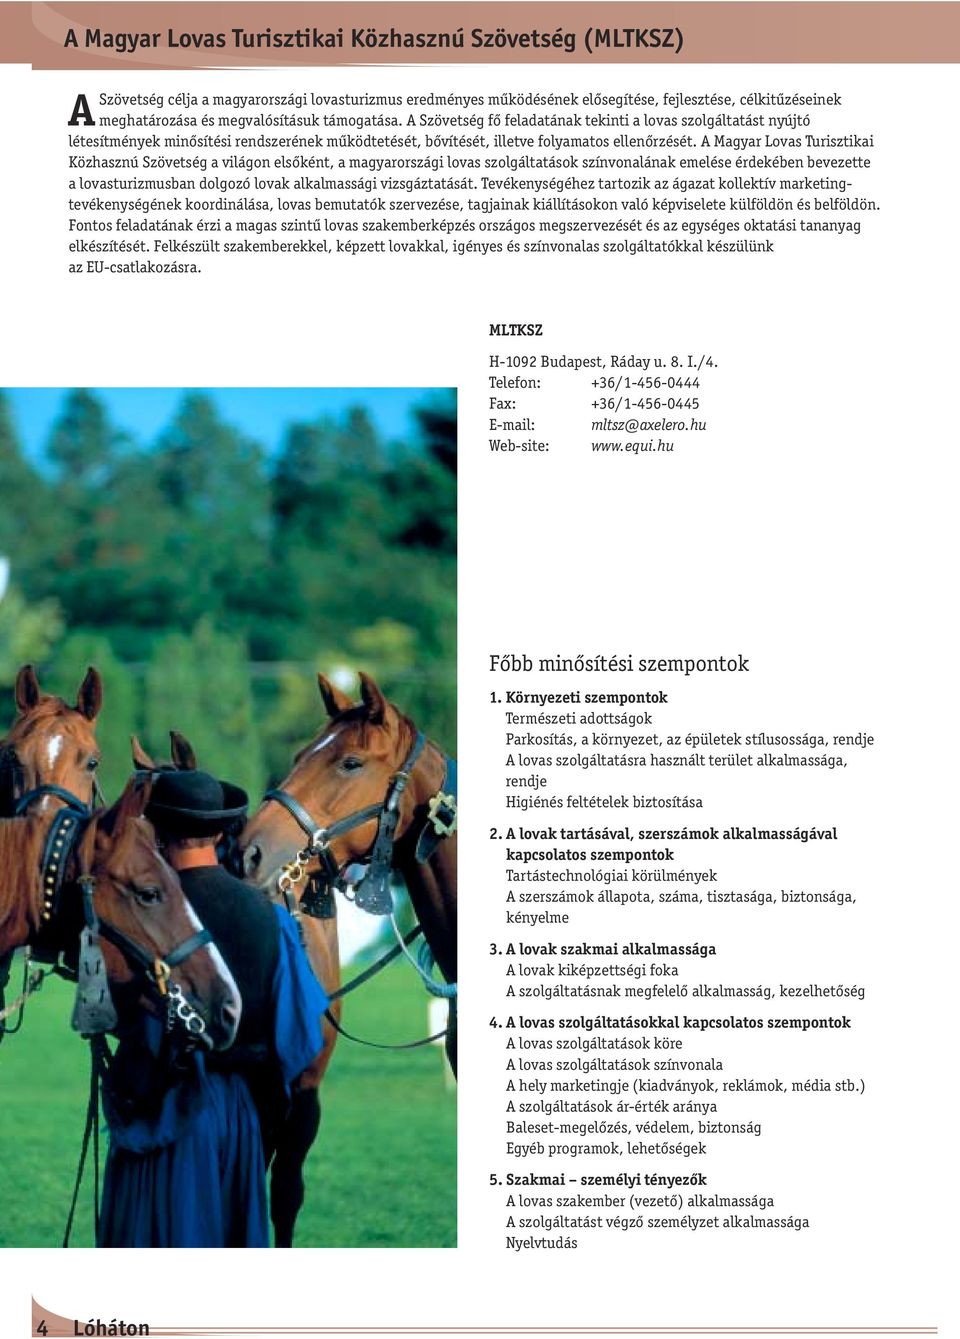 A Magyar Lovas Turisztikai Közhasznú Szövetség a világon elsőként, a magyarországi lovas szolgáltatások színvonalának emelése érdekében bevezette a lovasturizmusban dolgozó lovak alkalmassági